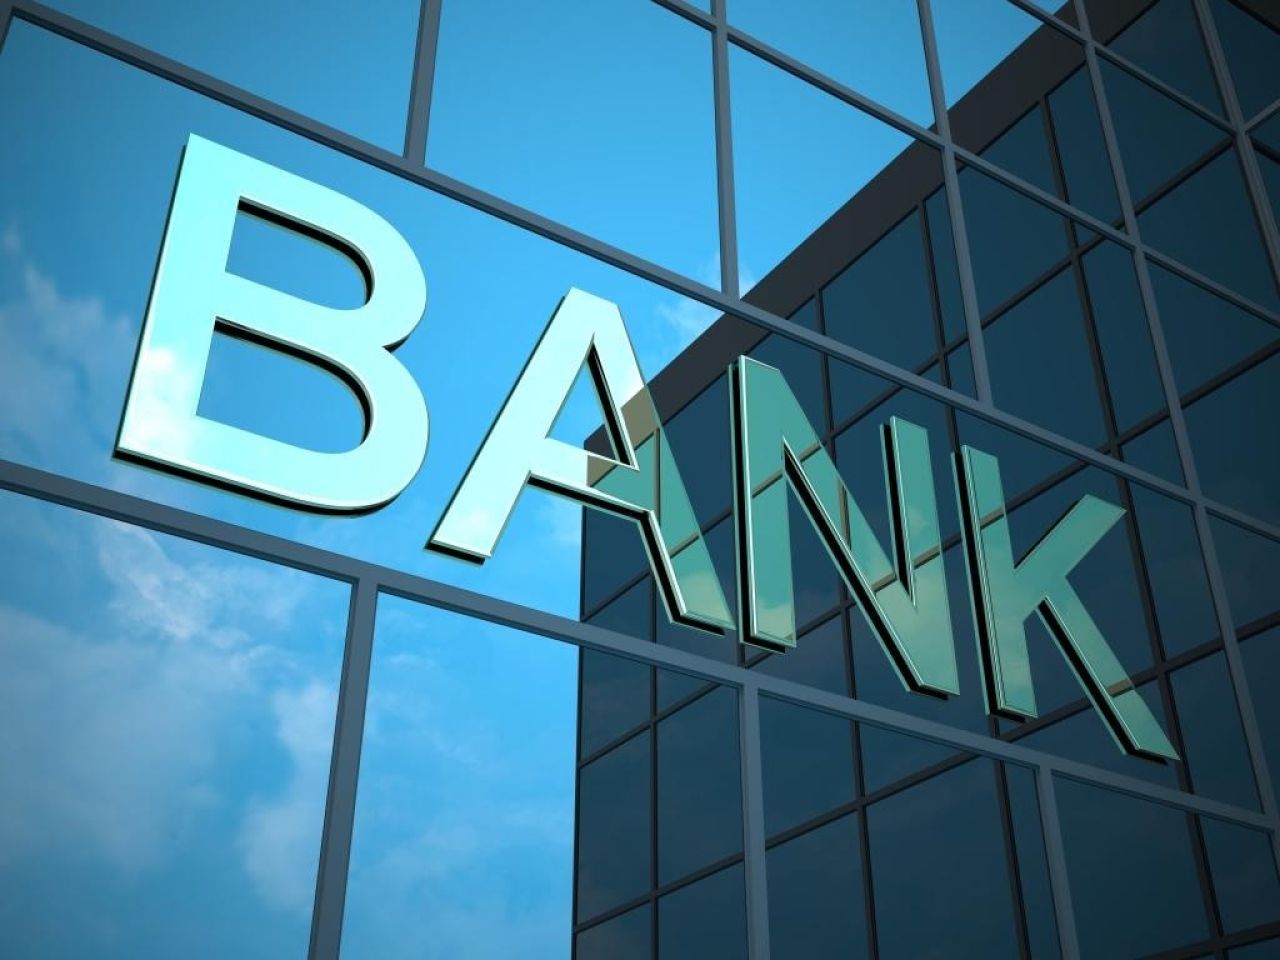 Հայաստանի բանկային համակարգը մի քանի անգամ ավելացրել է հարկային վճարումները